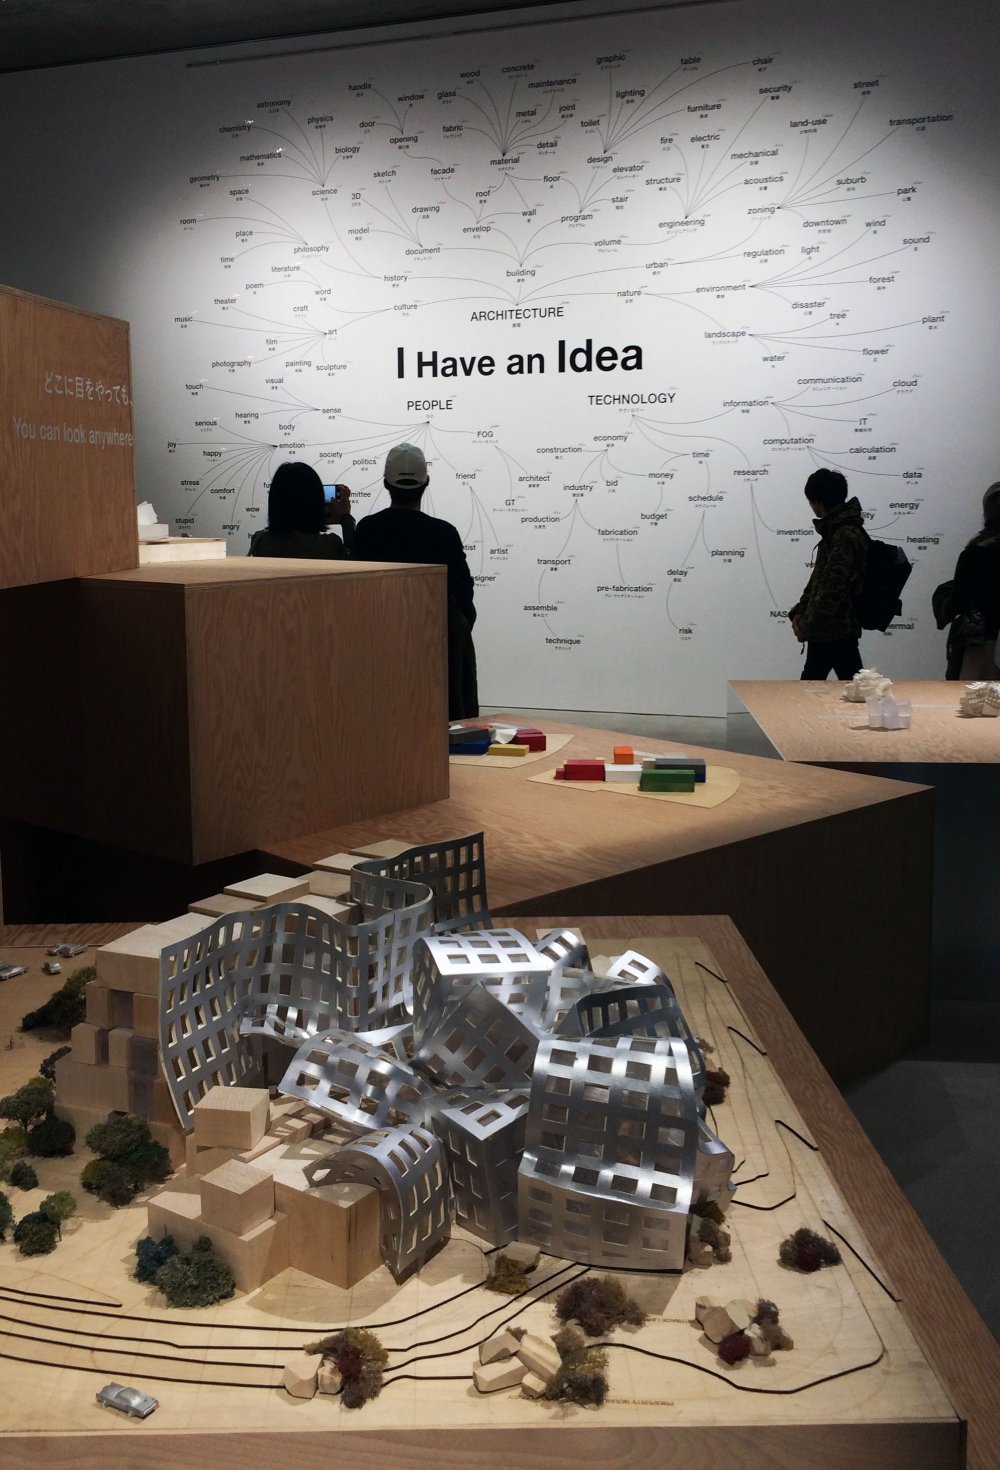 Lihat peta ide-ide dari Frank Gehry sebelum menemukan rencana bangunannya.